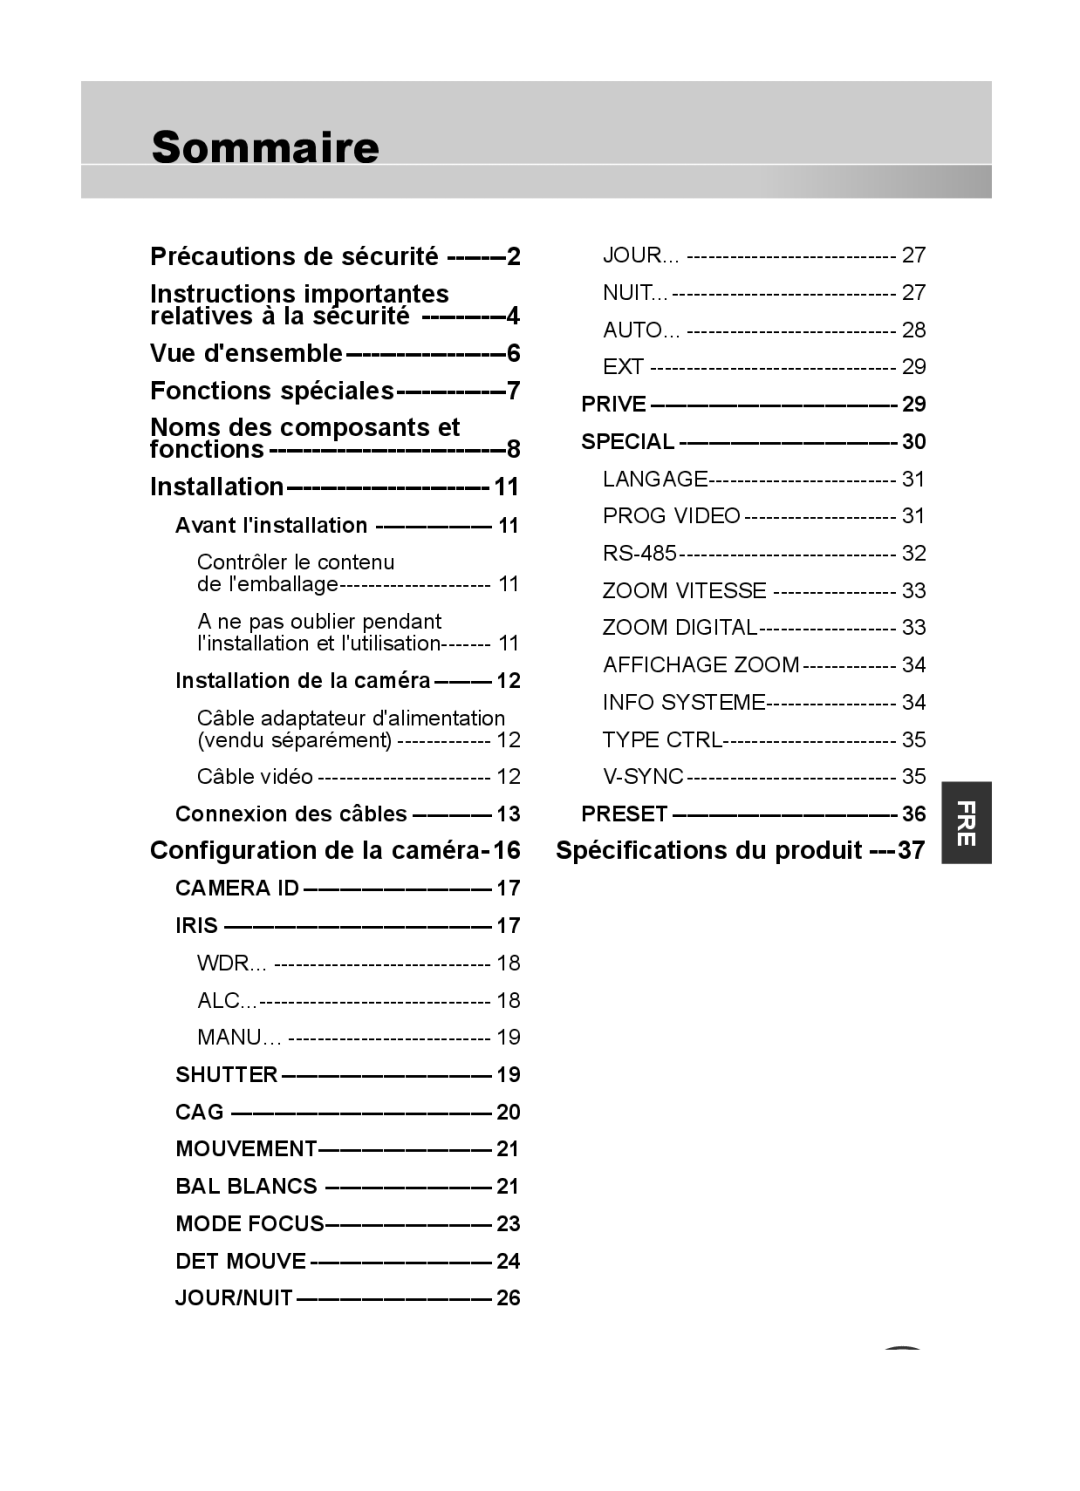 Samsung C4335(P), C4333(P), C4235(P) user manual Sommaire, Instructions importantes, Noms des composants et 